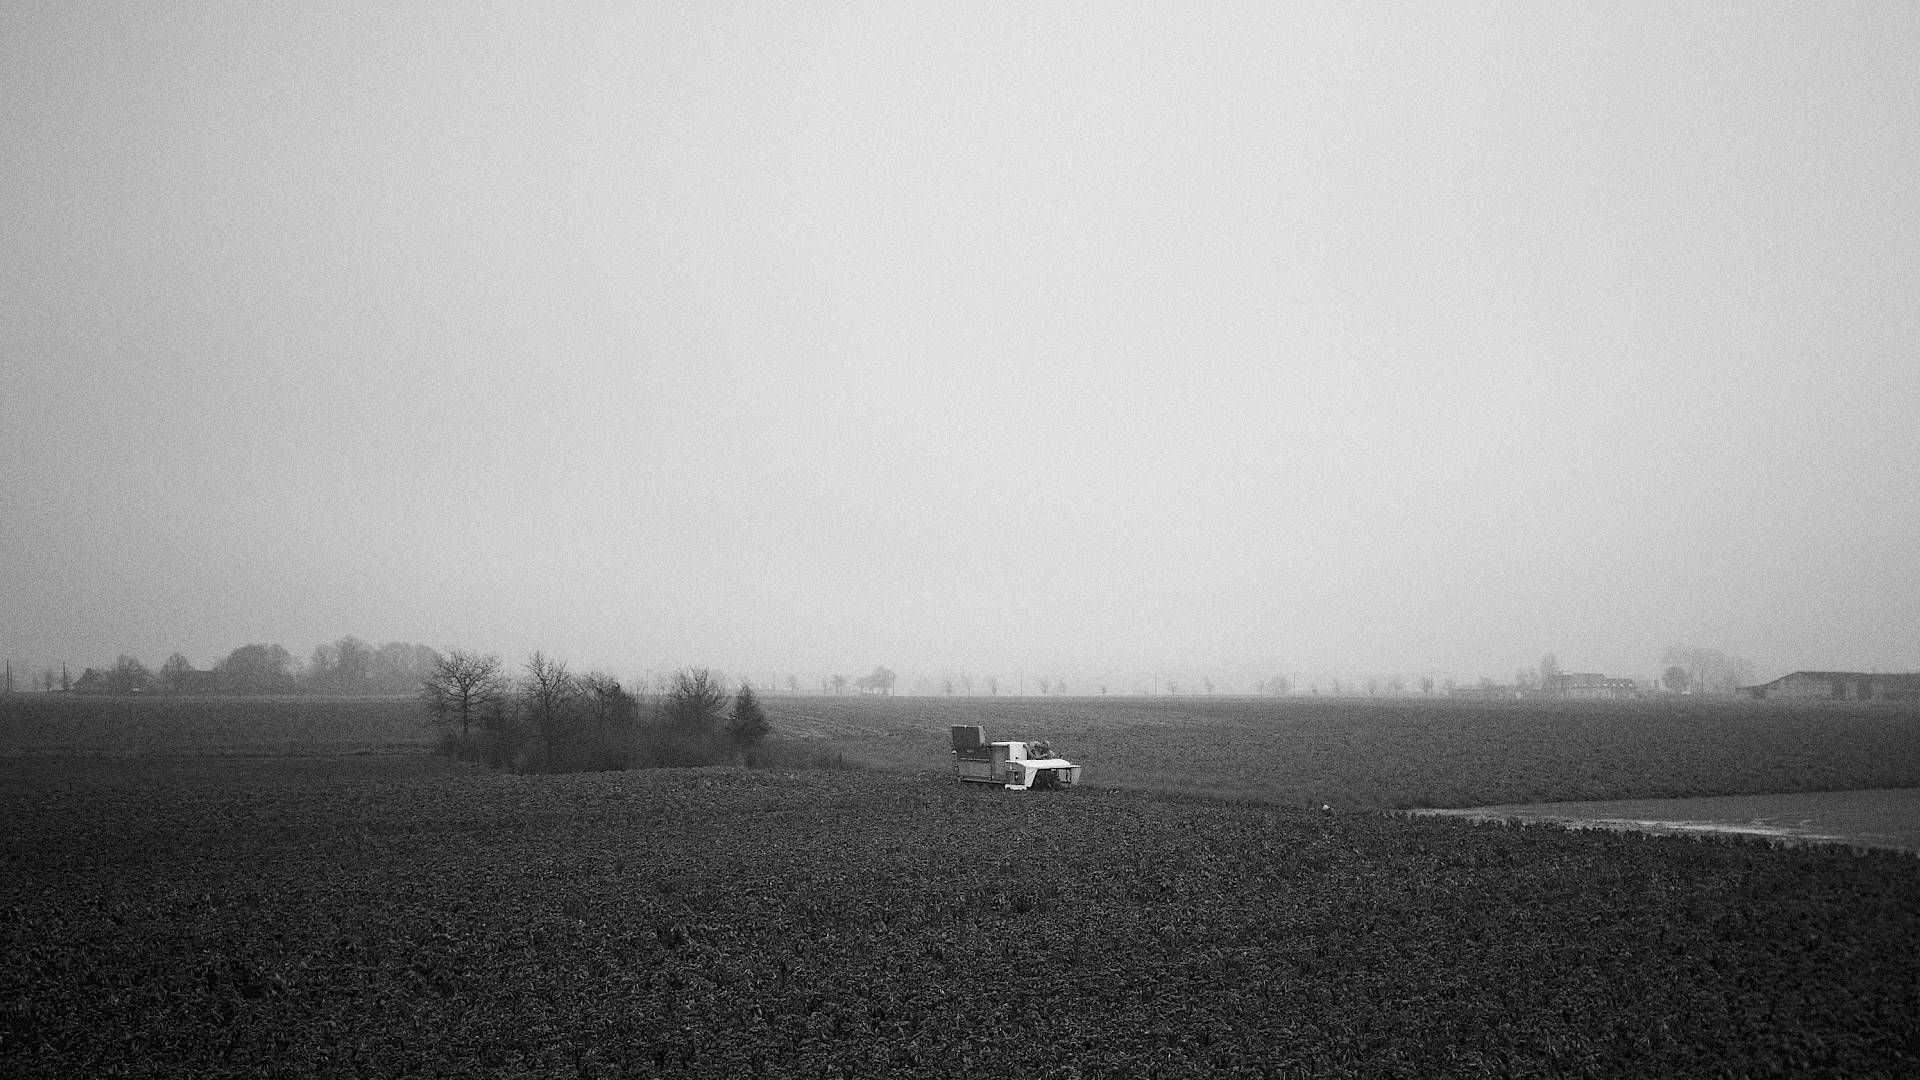 zwart-wit beeld van landbouwmachine op platteland, met boerderijen in achtergrond